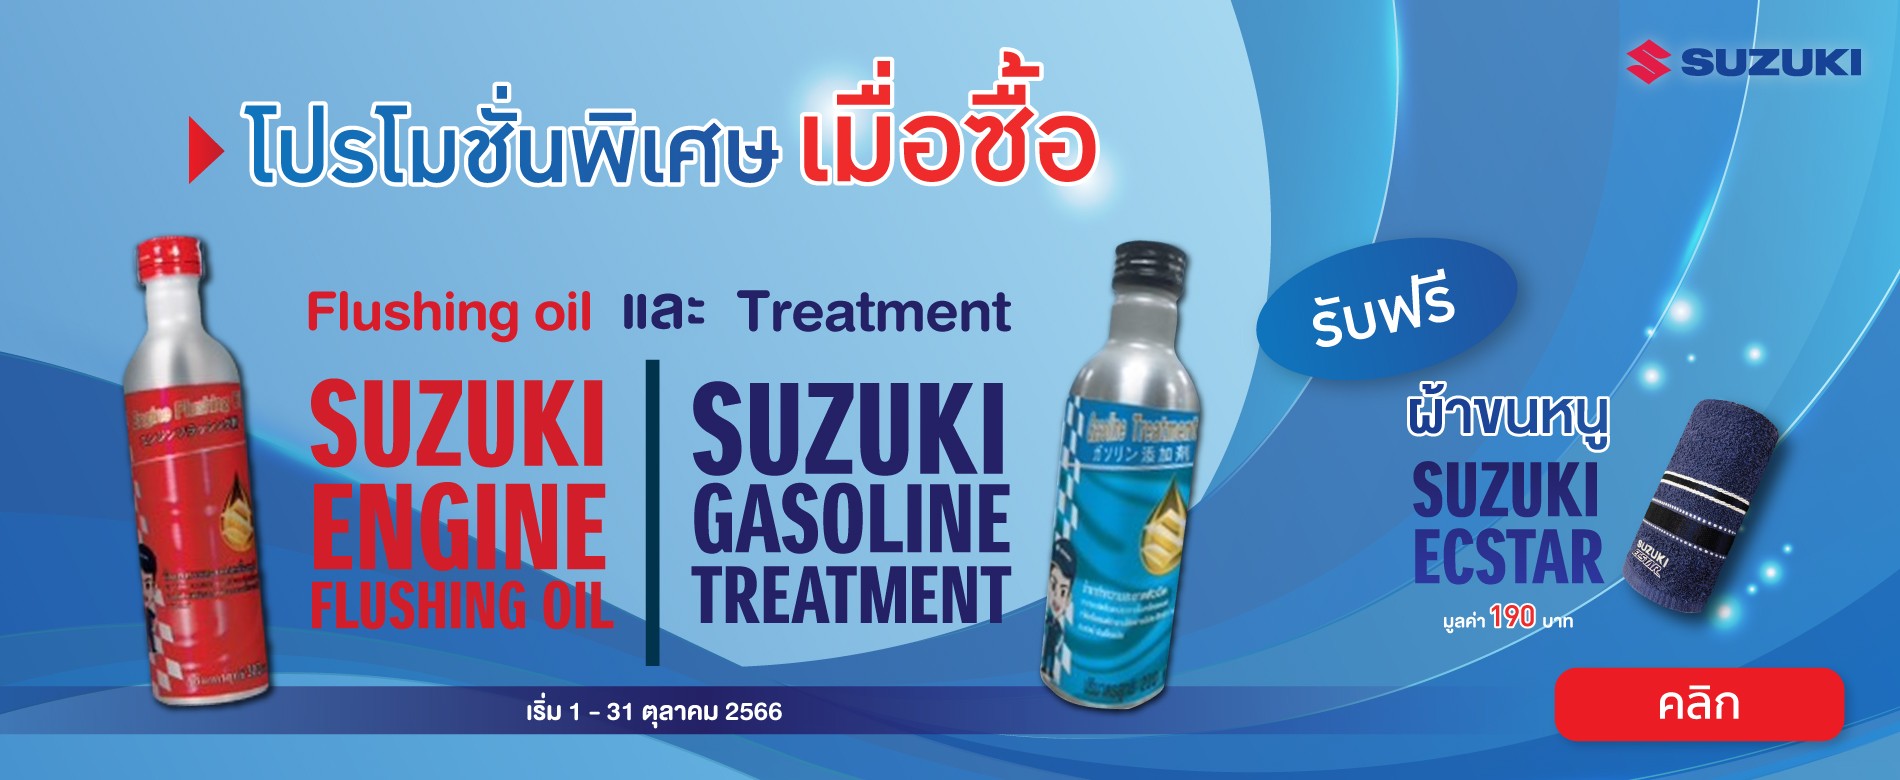 ซูซูกิ จัดแคมเปญพิเศษ เมื่อลูกค้าซื้อสินค้า เคมีภัณฑ์ SUZUKI ENGINE FLUSHING OIL คู่กับ SUZUKI GASOLINE TREATMENT จำนวน 1 ชุด จะได้รับของแถมเป็น ผ้าขนหนู SUZUKI ECSTAR จำนวน 1 ผืน (มูลค่า 190 บาท ) ที่ศูนย์บริการซูซูกิทั่วประเทศ โปรโมชั่น